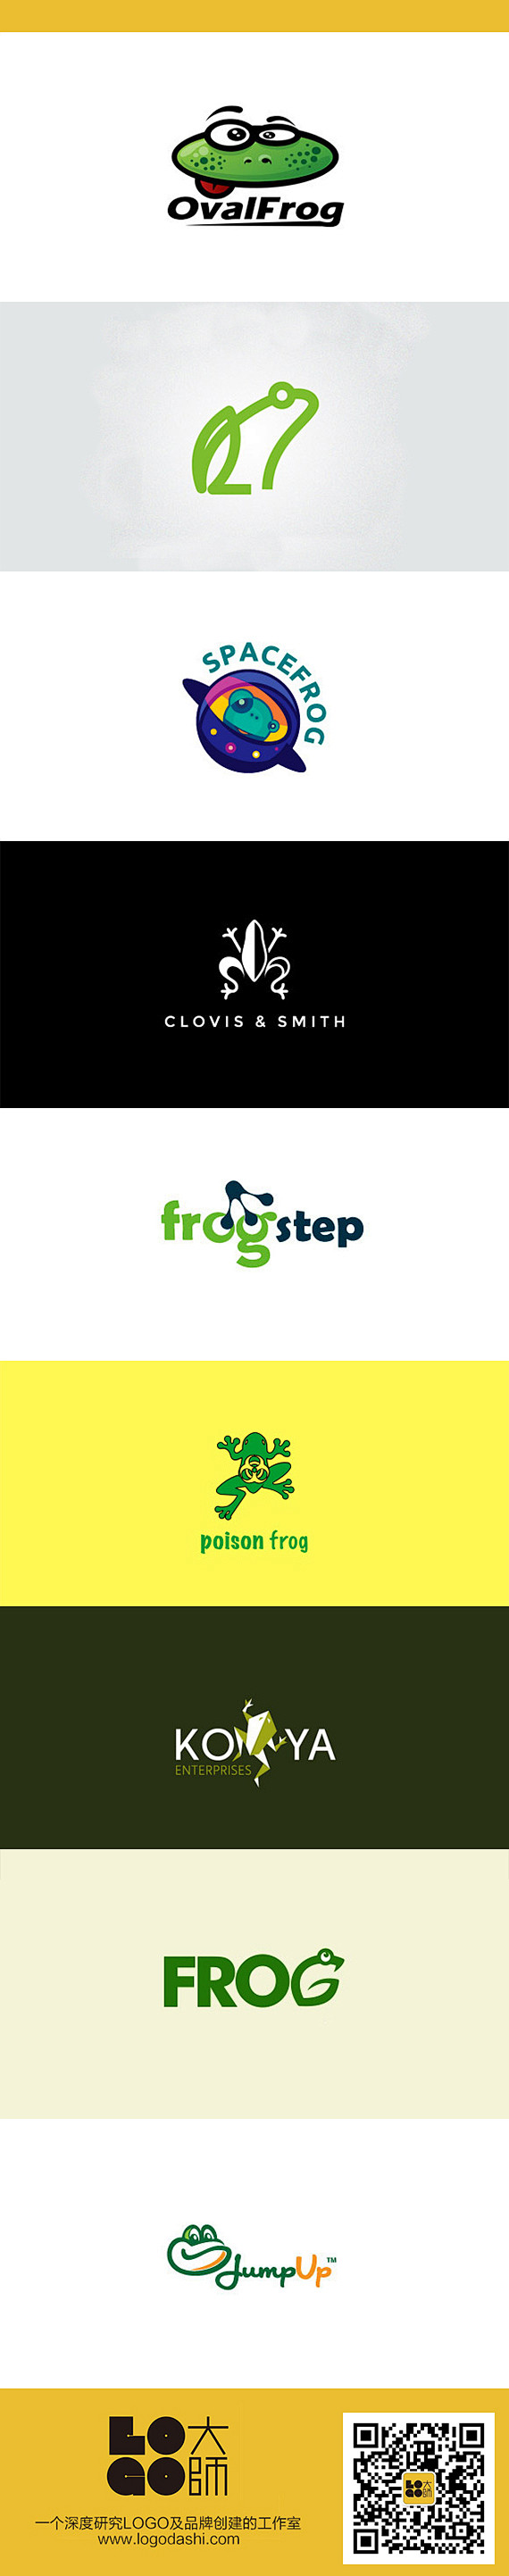 #青蛙##logo设计#网址http:/...